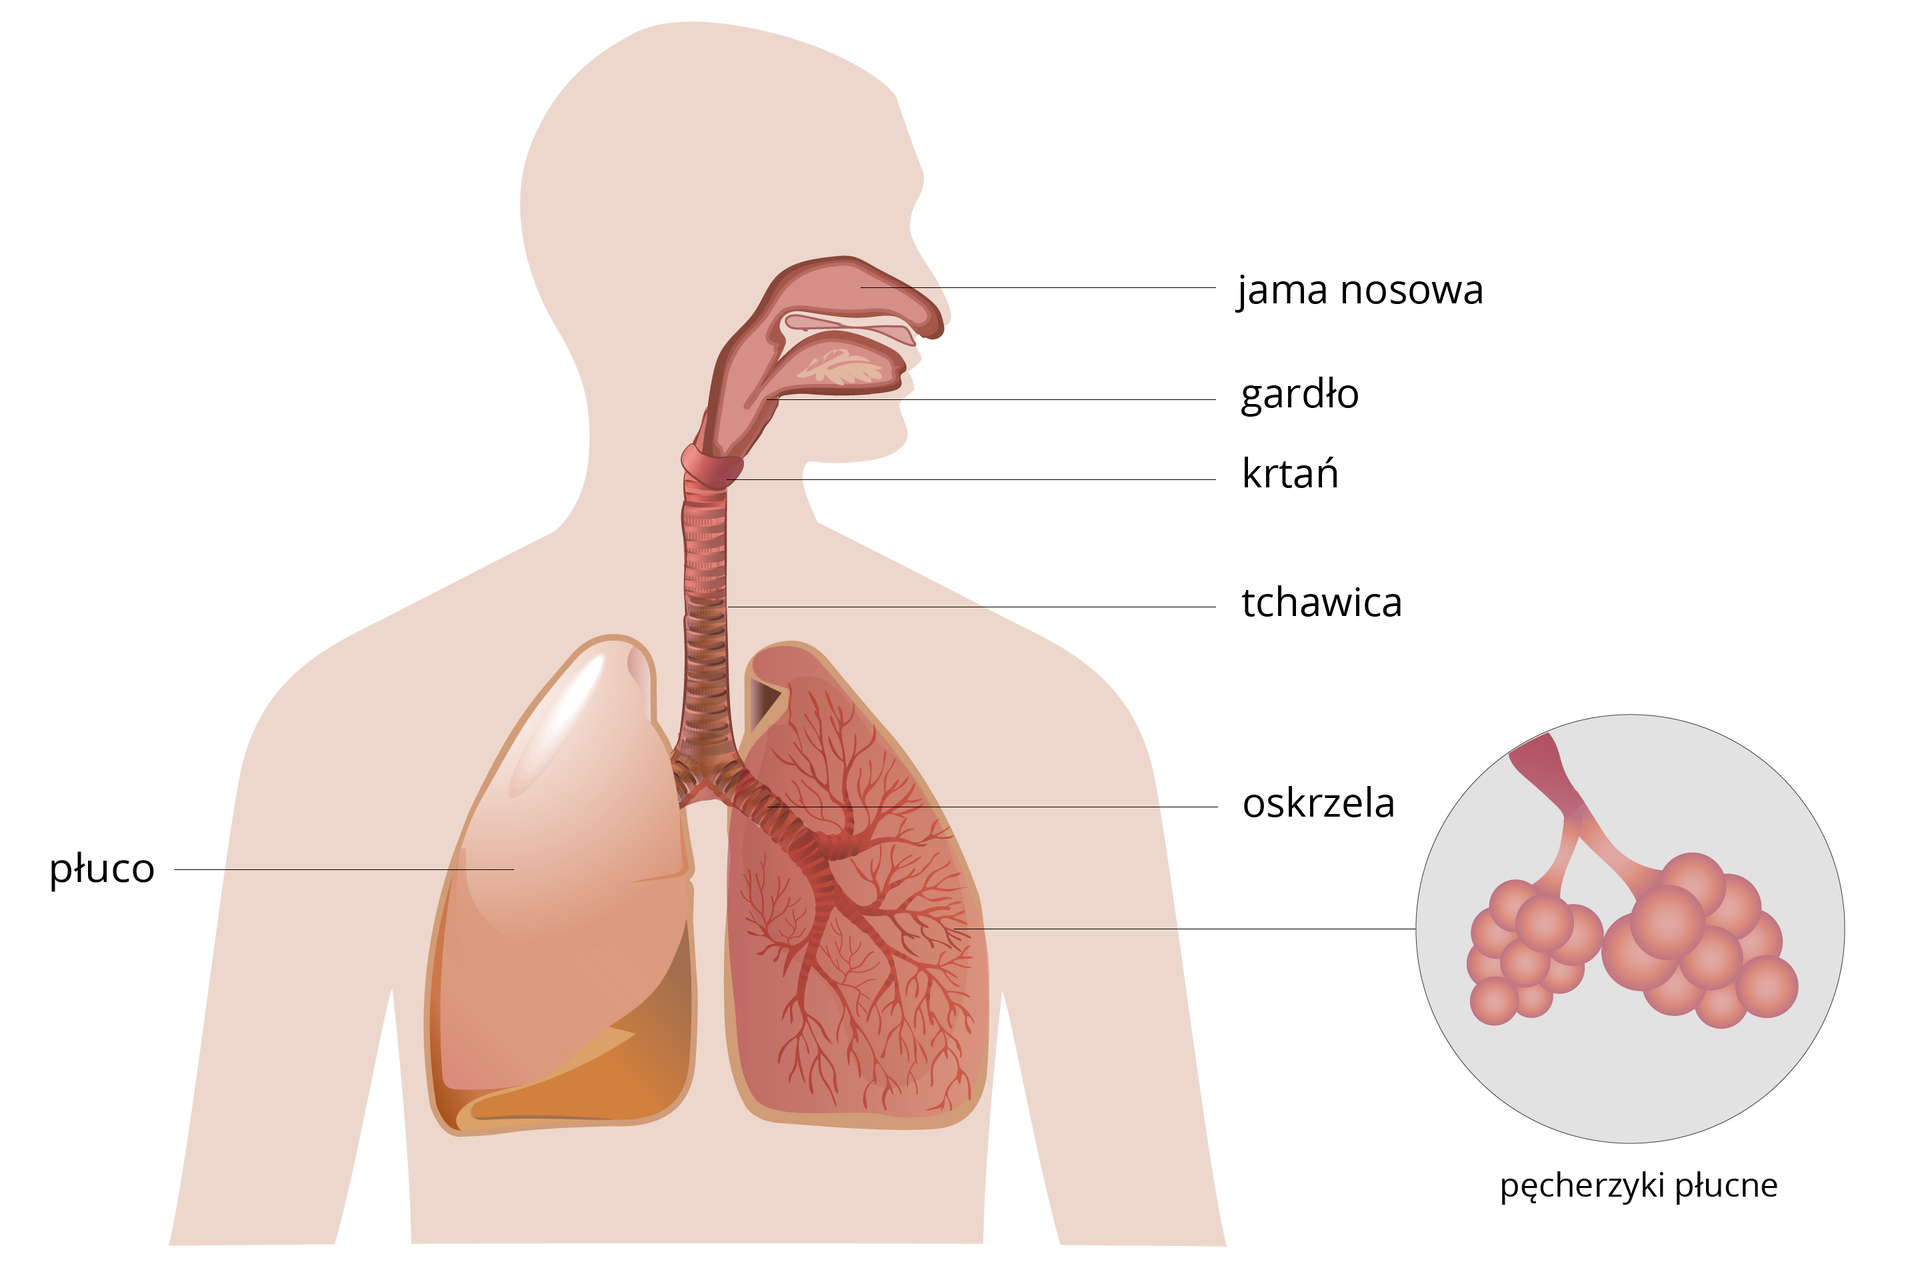 Schemat, przedstawiający budowę układu oddechowego człowieka z opisem narzadów: jama nosowa, gardło, krtań, tchawica, oskrzela oraz płuco. W prawej dolnej części schematu przybliżenie pęcherzyków płucnych